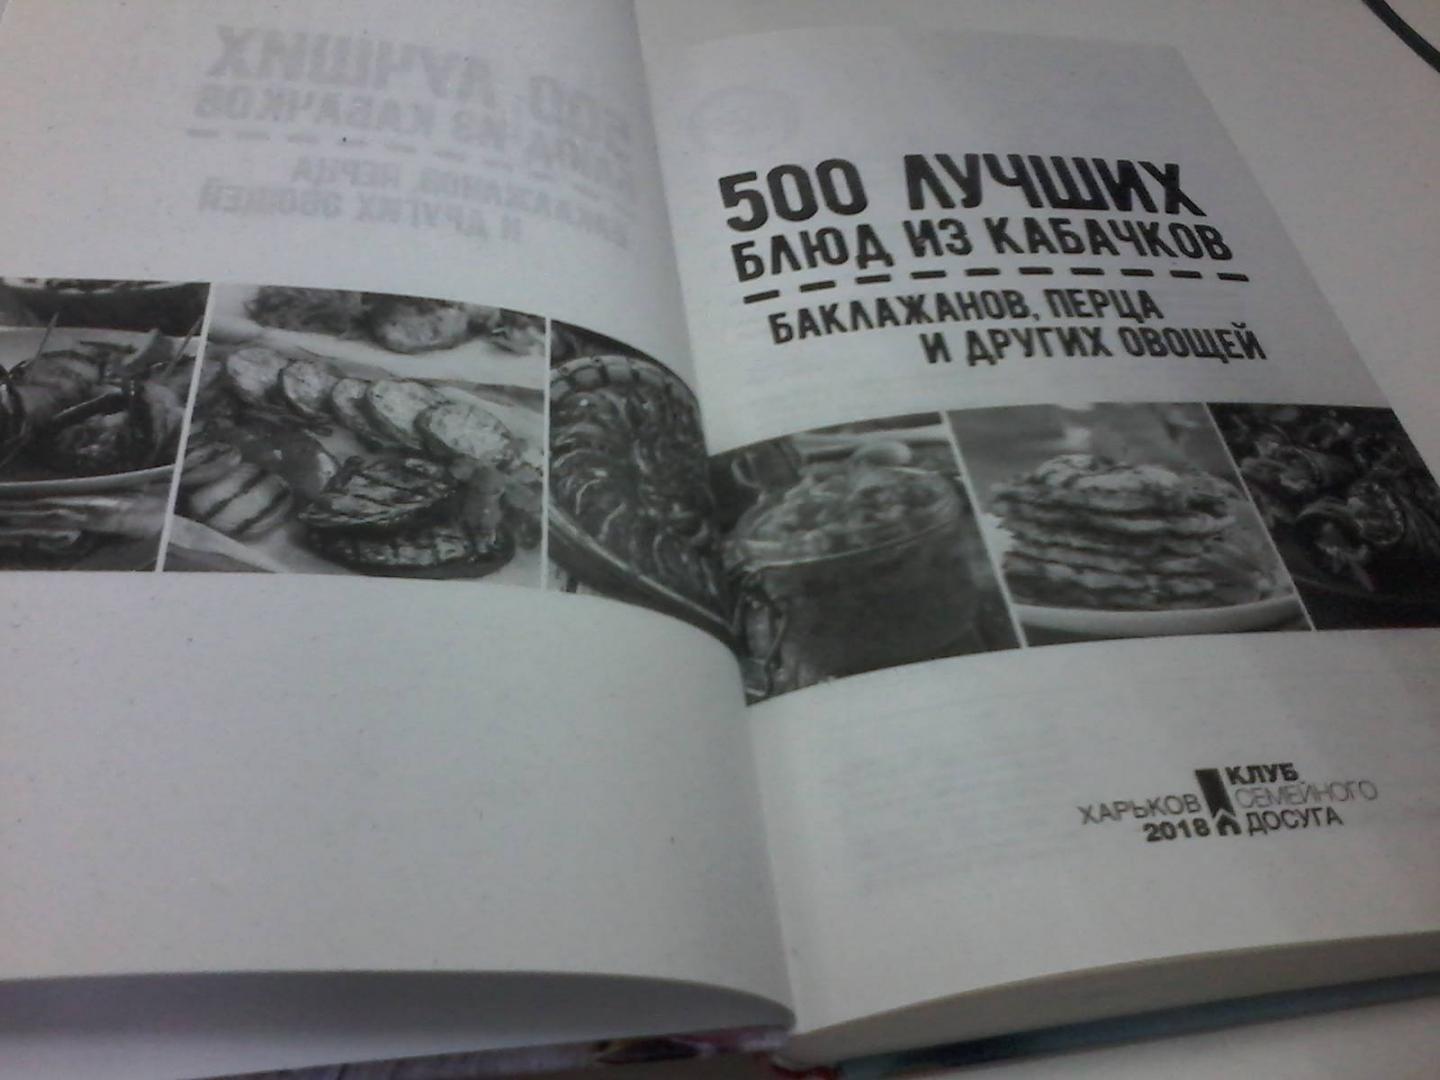 Иллюстрация 10 из 12 для 500 лучших блюд из кабачков, баклажанов, перца | Лабиринт - книги. Источник: Воздух